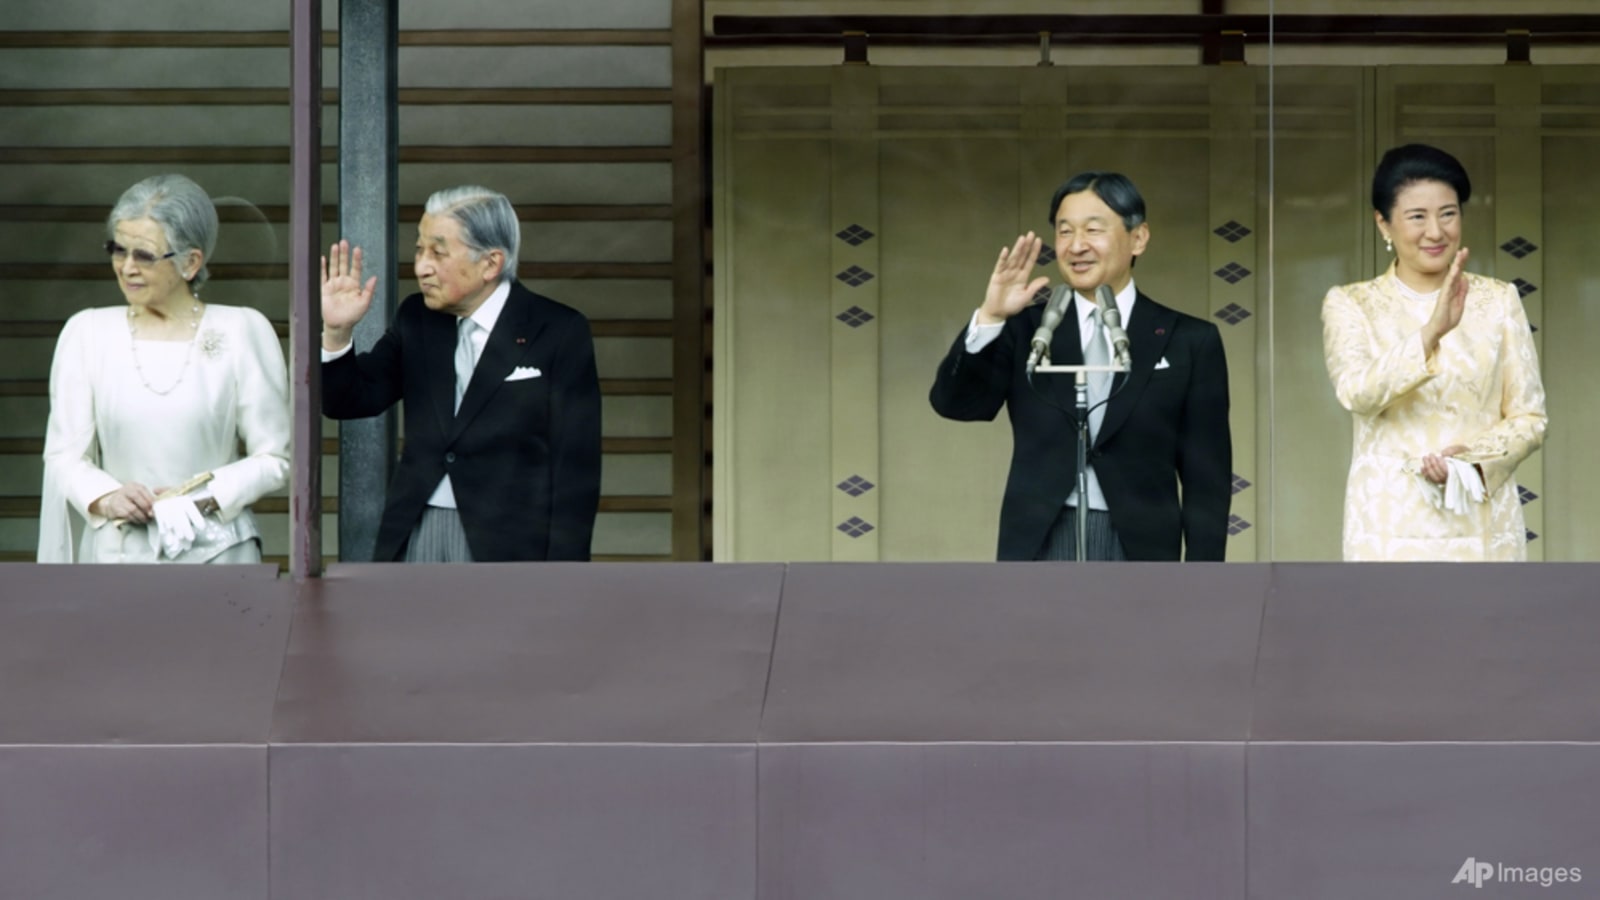 Japan faces royal dilemma as ancient monarchy shrinks